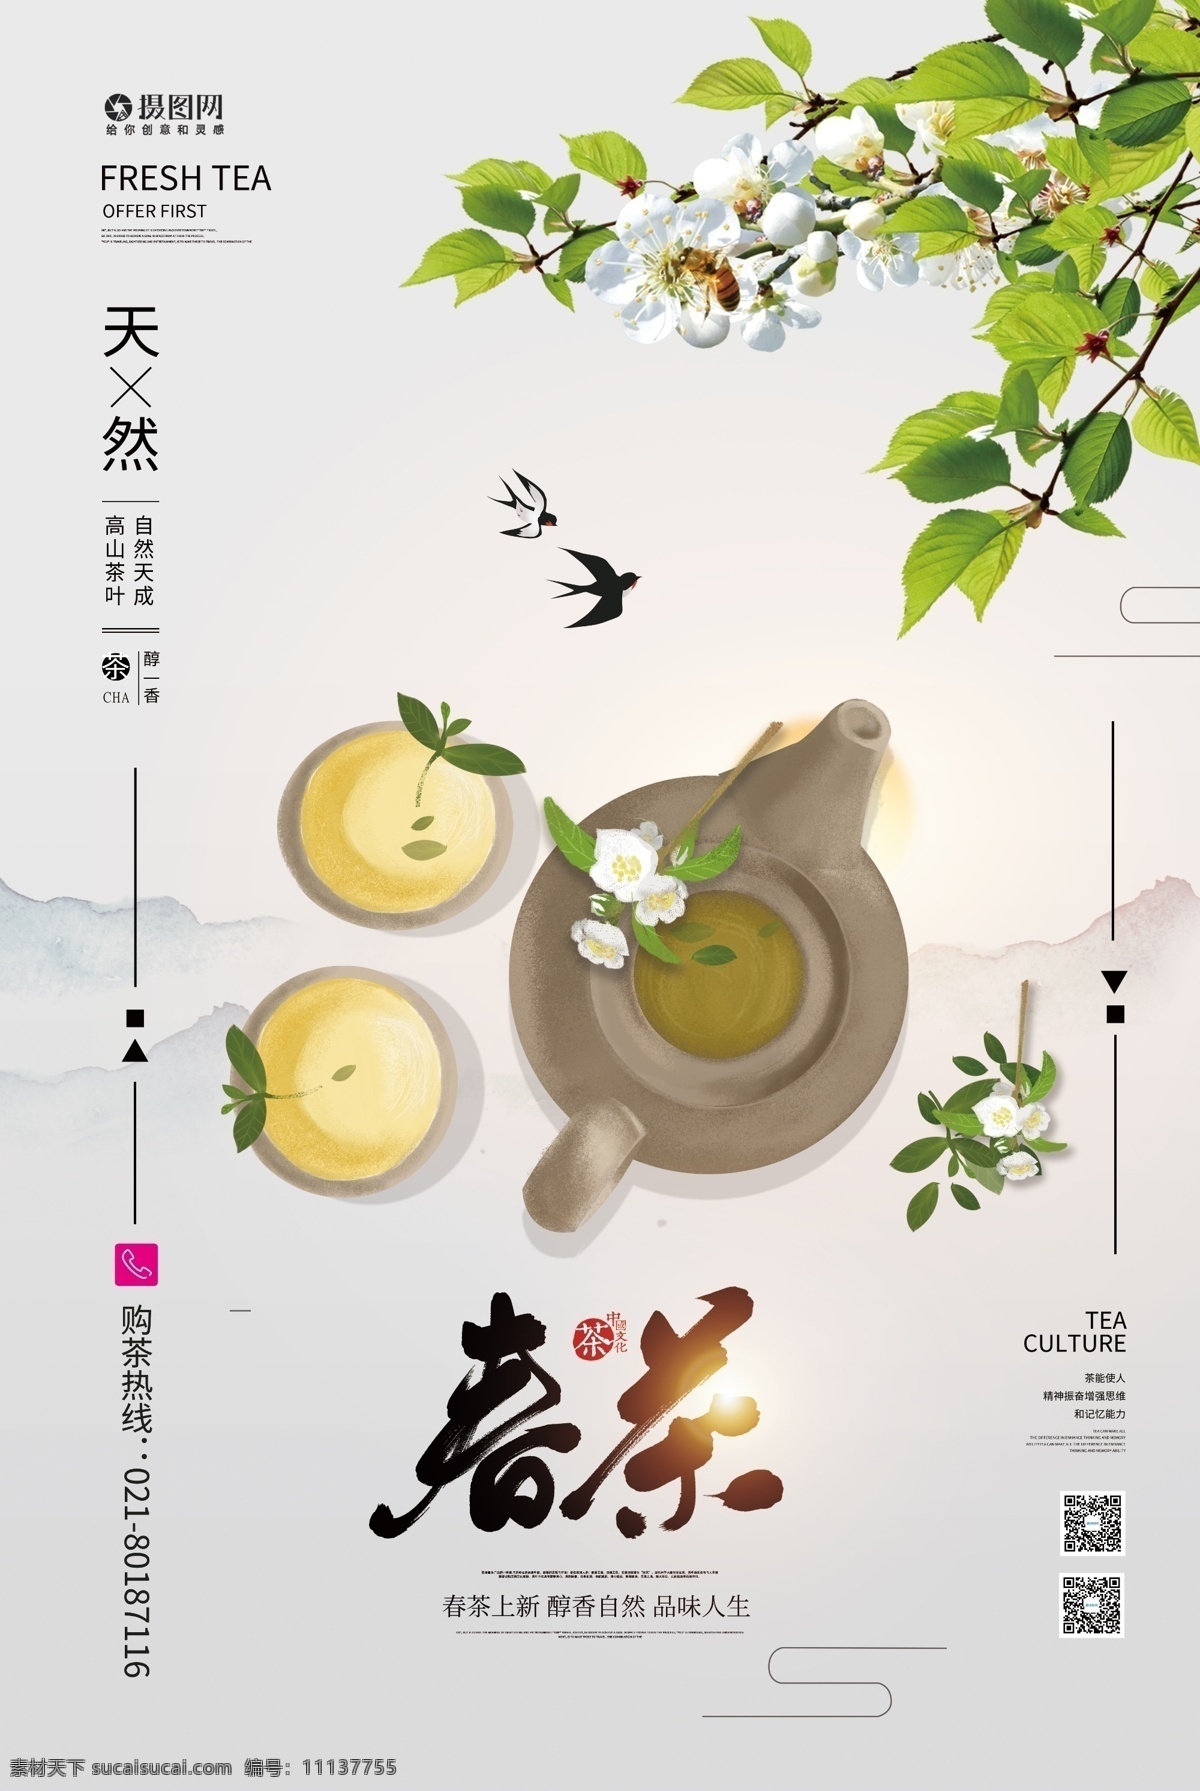 清新 春茶 茶 韵 茶文化 宣传海报 茶韵 茶叶 新茶 打折 促销 茶叶促销 茶叶特卖